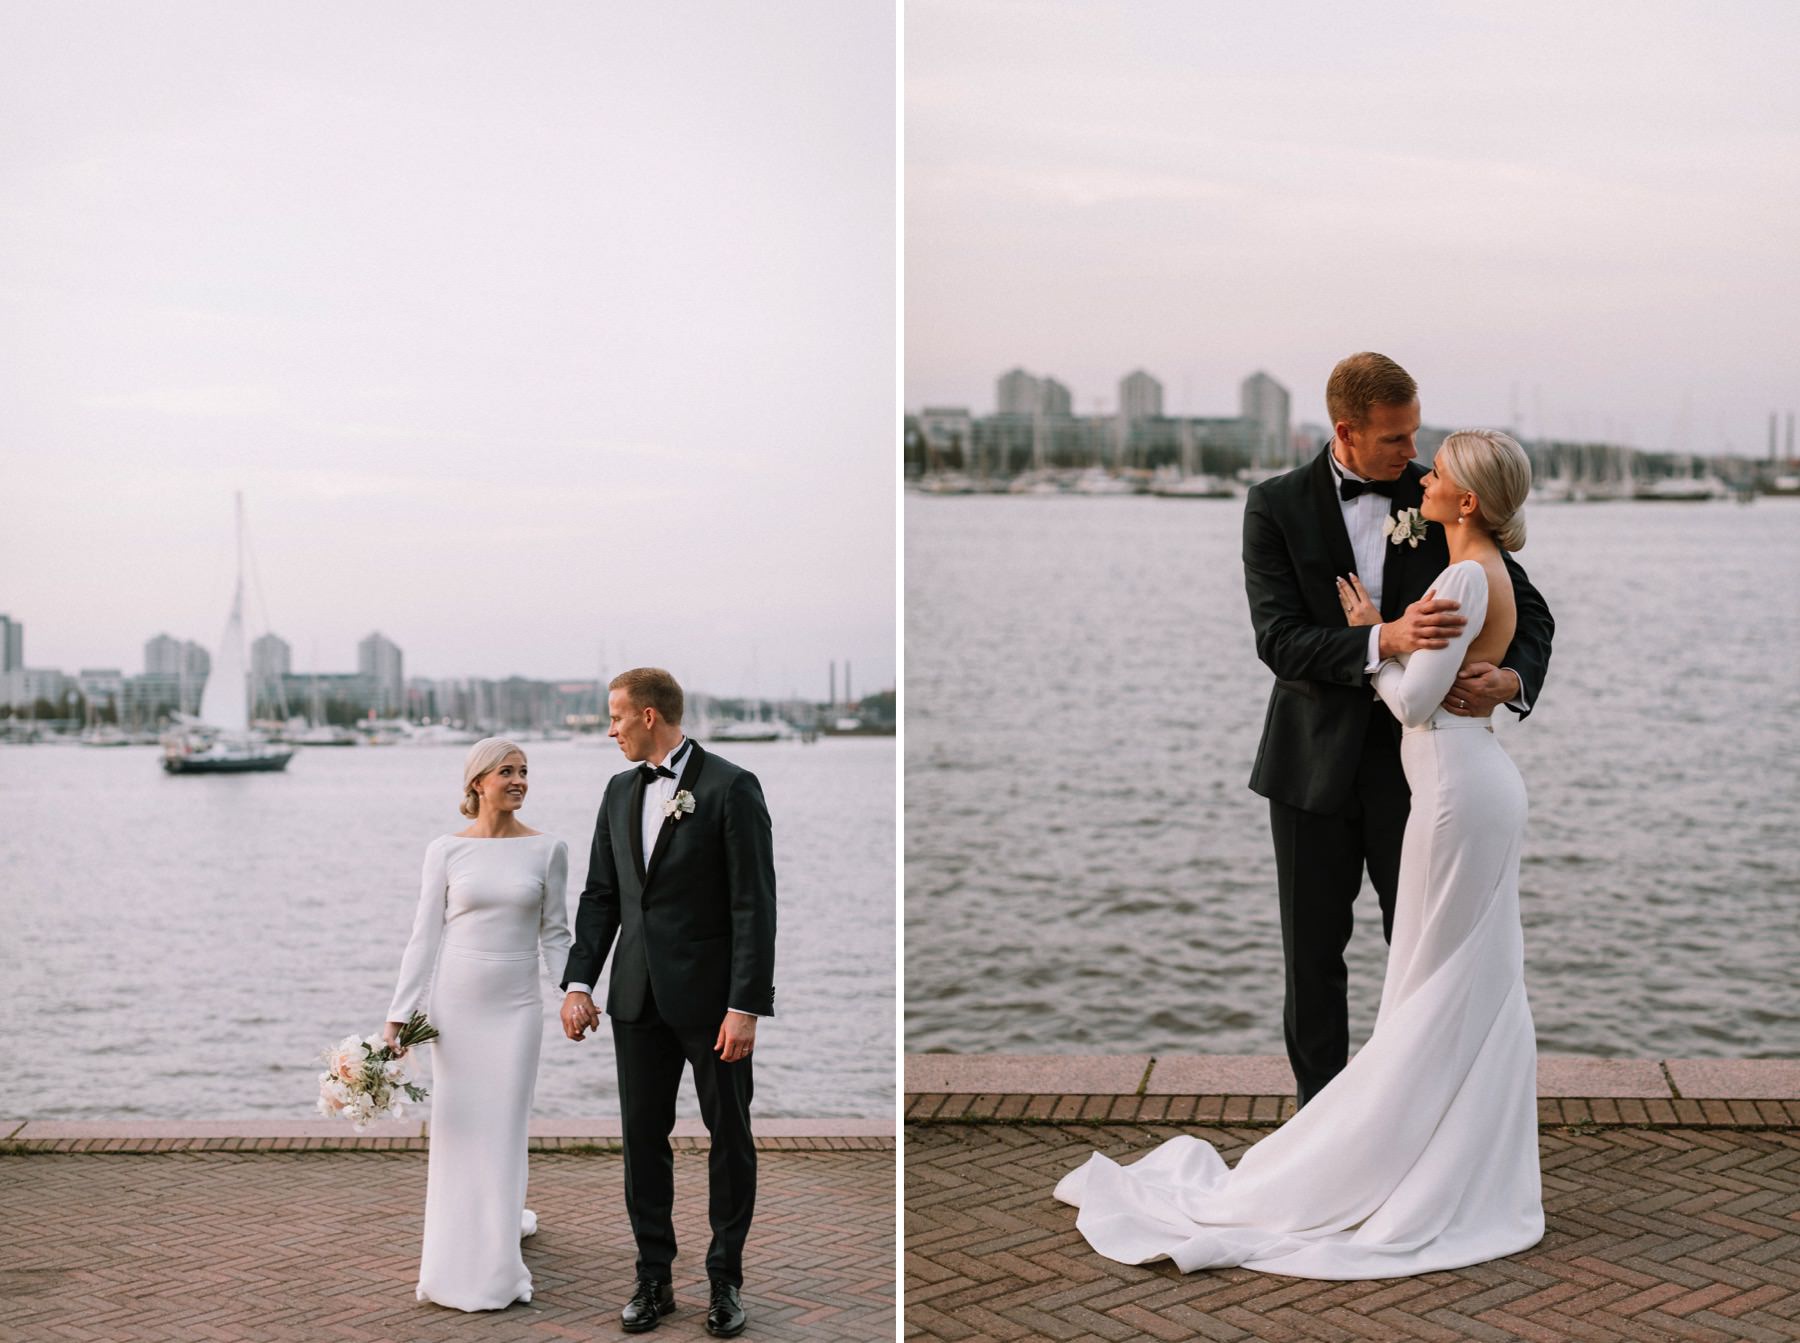 Helsinki wedding by the sea